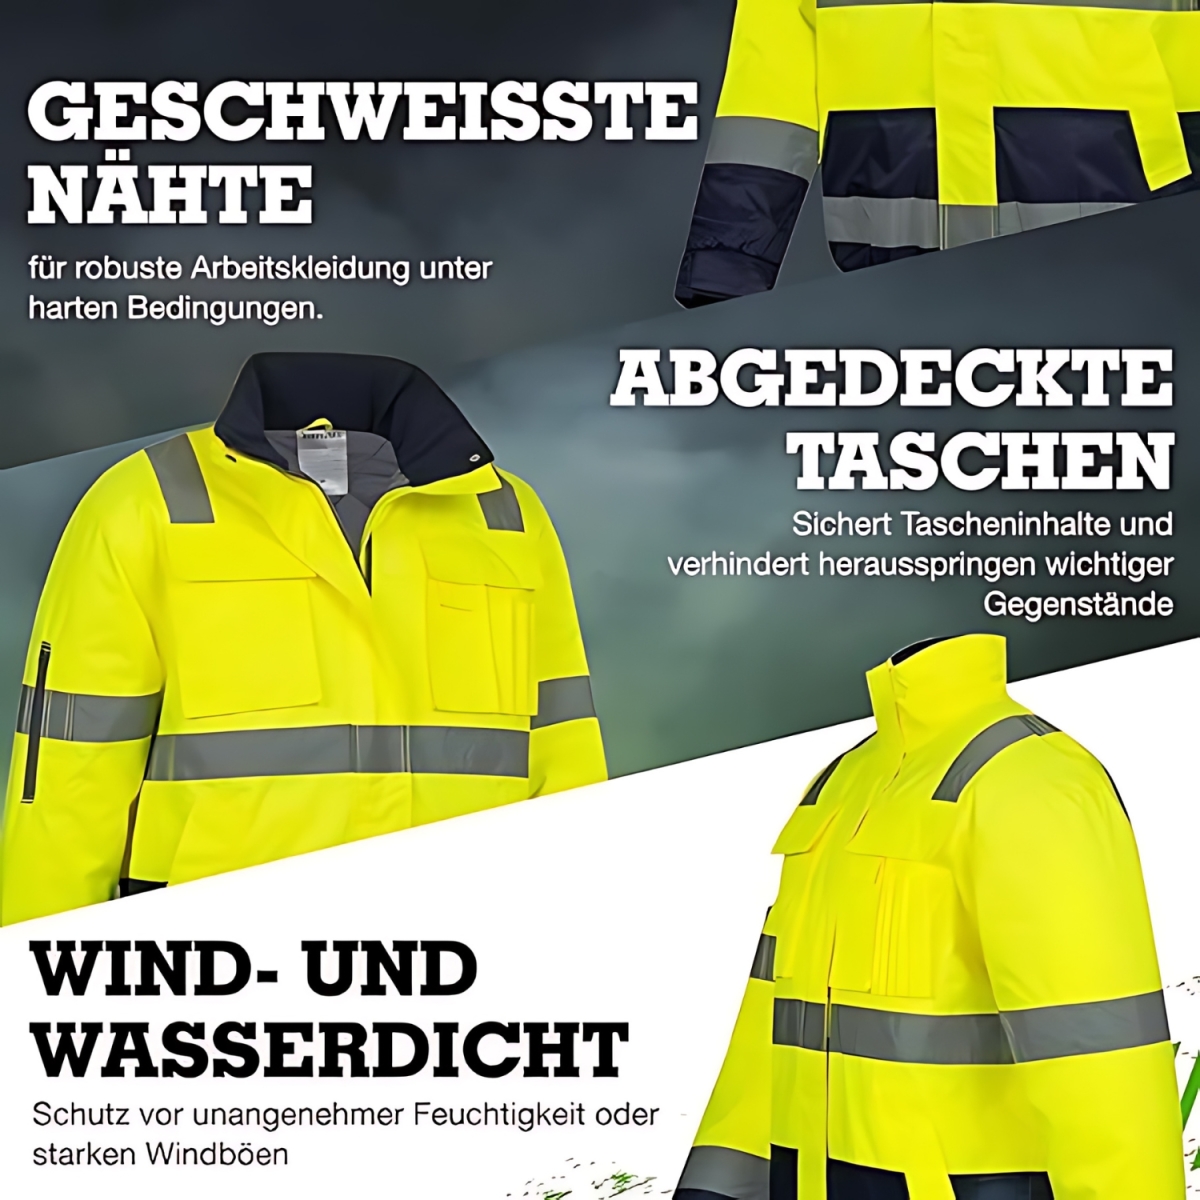 € GOLDENBOW Safetytex®, 35,90 Pilotenjacke Warnschutz - gelb/marine